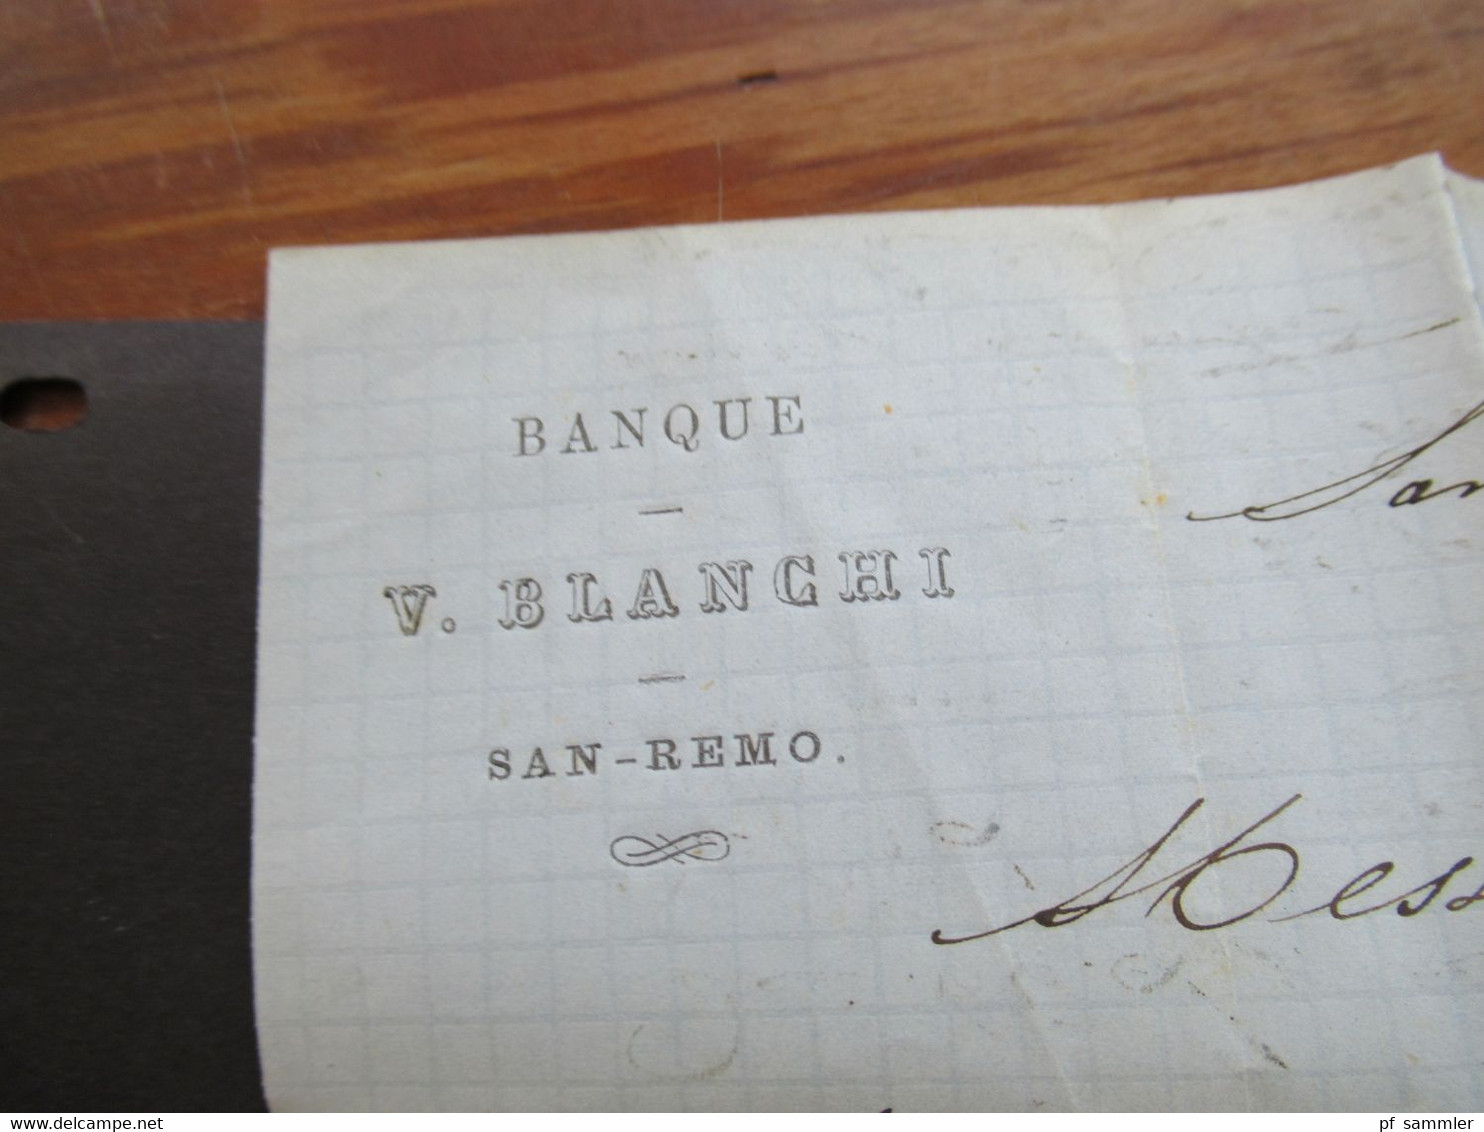 Italien 1866 Michel Nr.20 EF San Remo - Nice Stempel PD und roter K2 Italie 1 Menton Faltbrief mit Inhalt